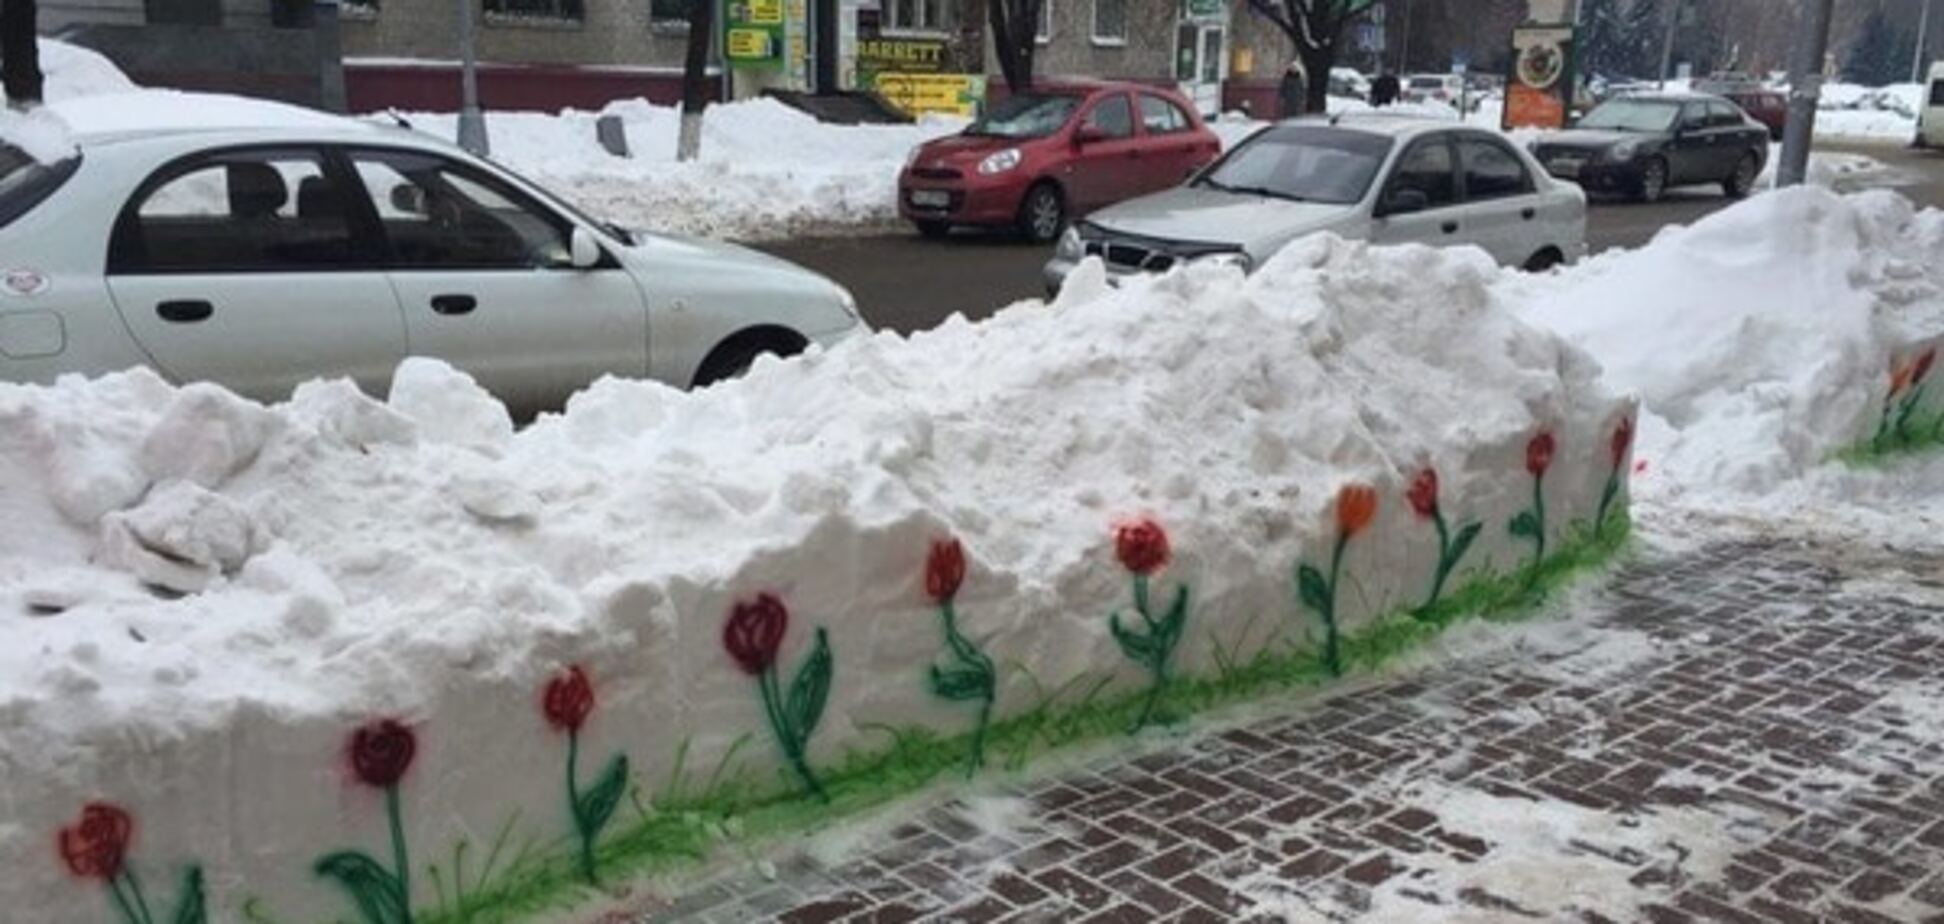 Цветы на снегу: в Кременчуге посреди зимы 'распустились' тюльпаны. Фотофакт